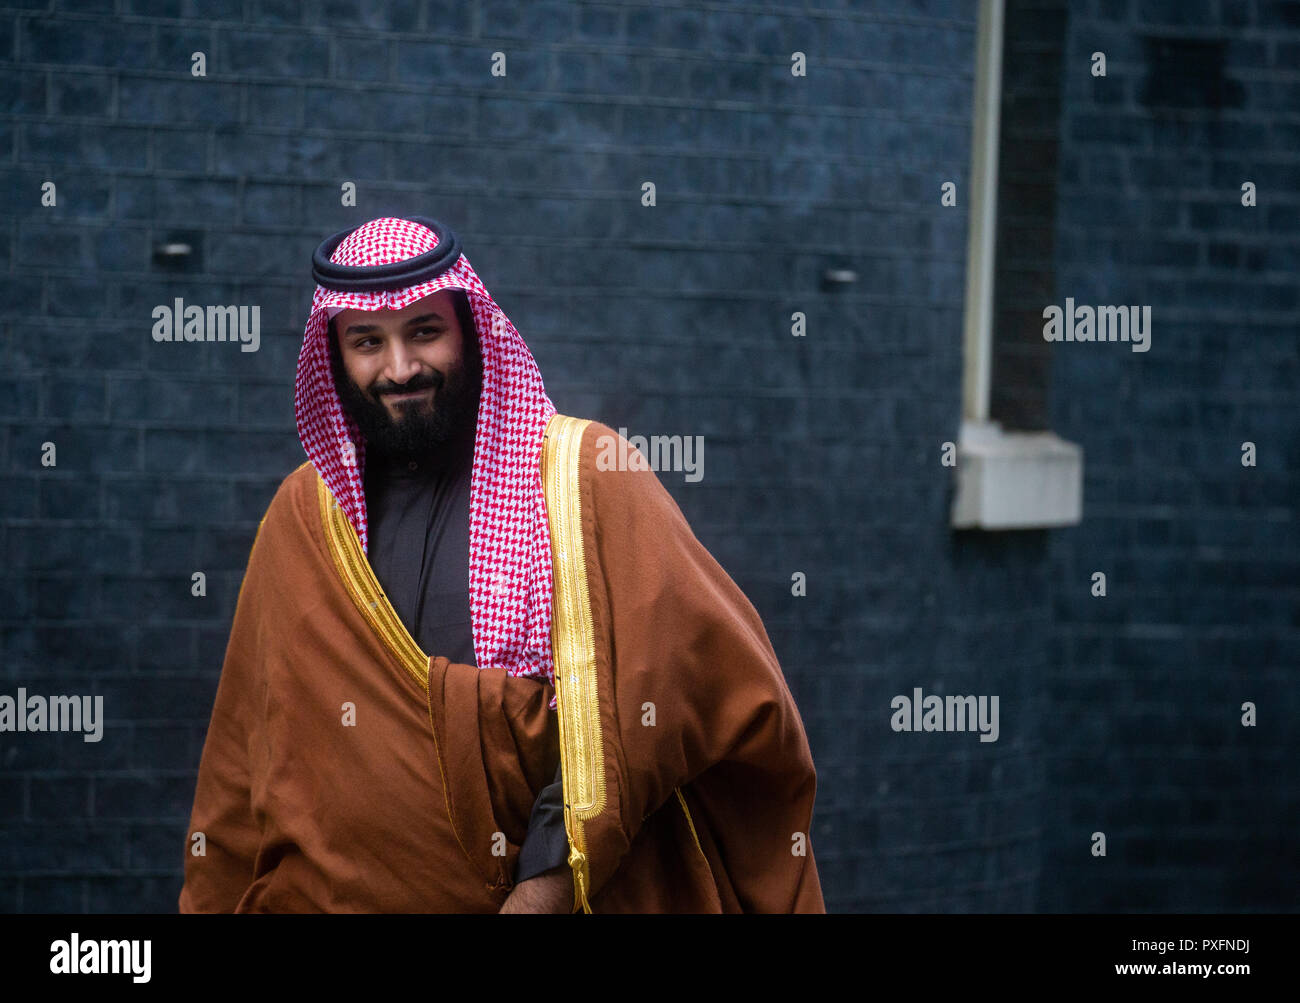 Crown Prince Mohammad Bin Salman, der Kronprinz von Saudi-arabien und Sohn von König Salman, besuche Theresa May in der Downing Street. Stockfoto